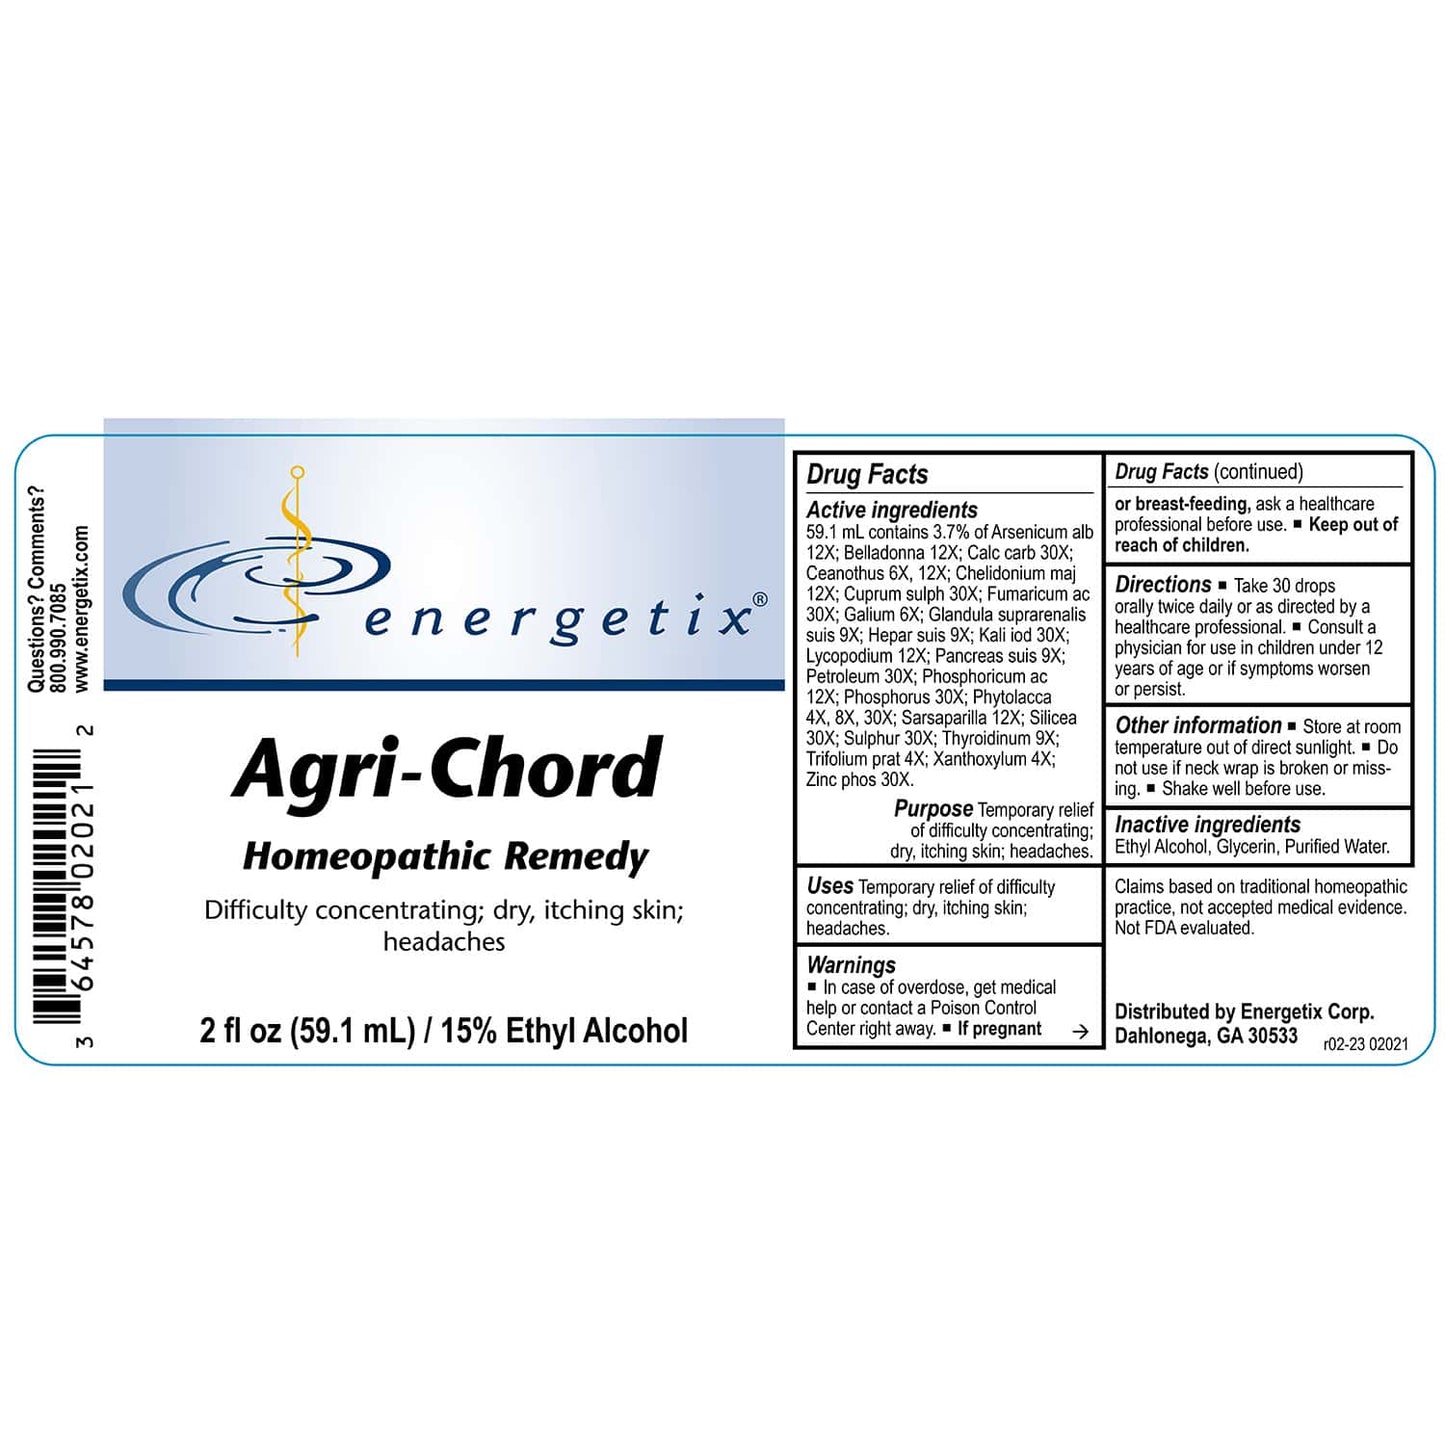 Agri-Chord